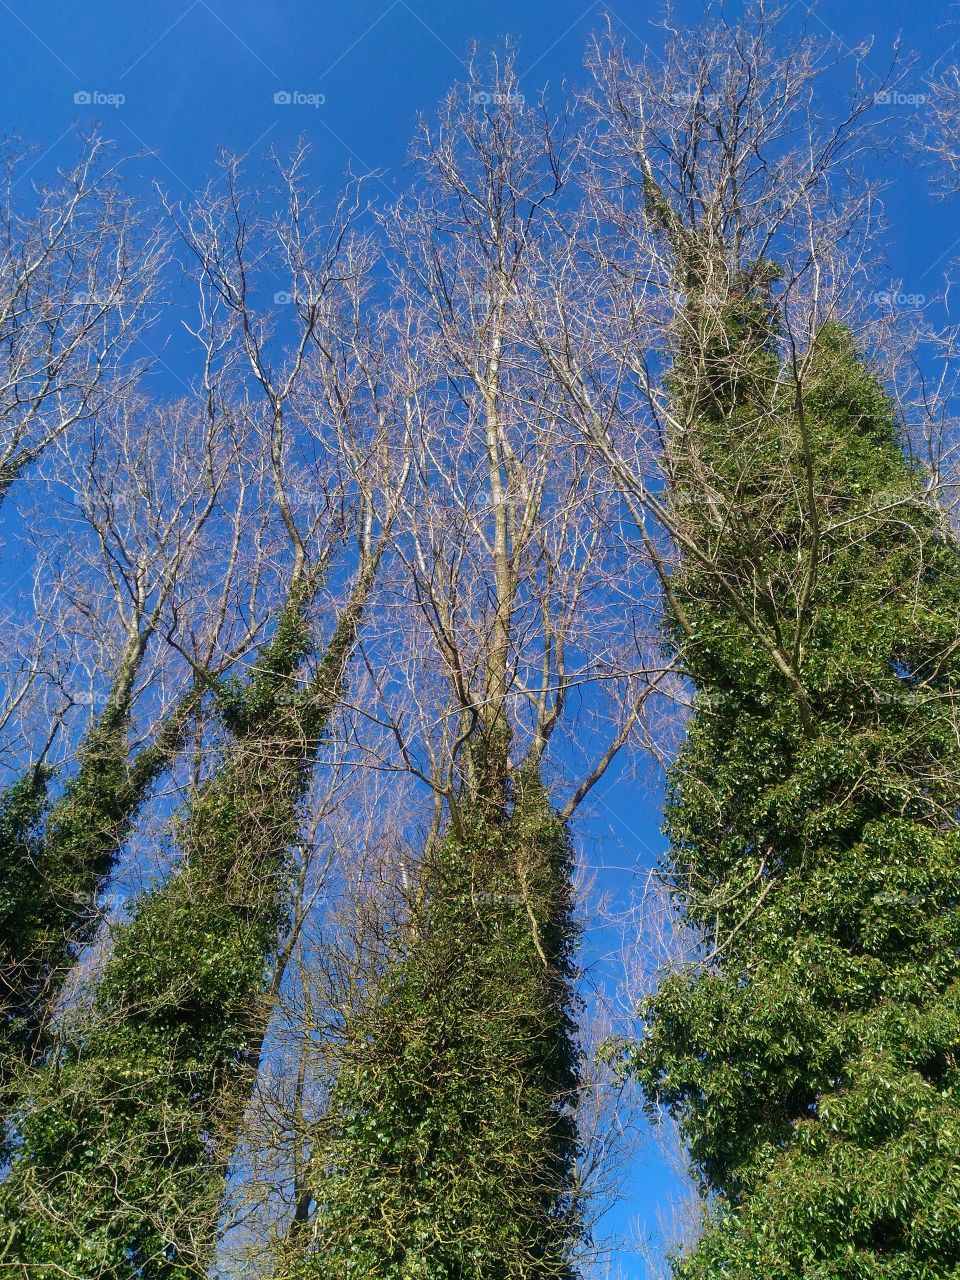 Invasive trees in winter